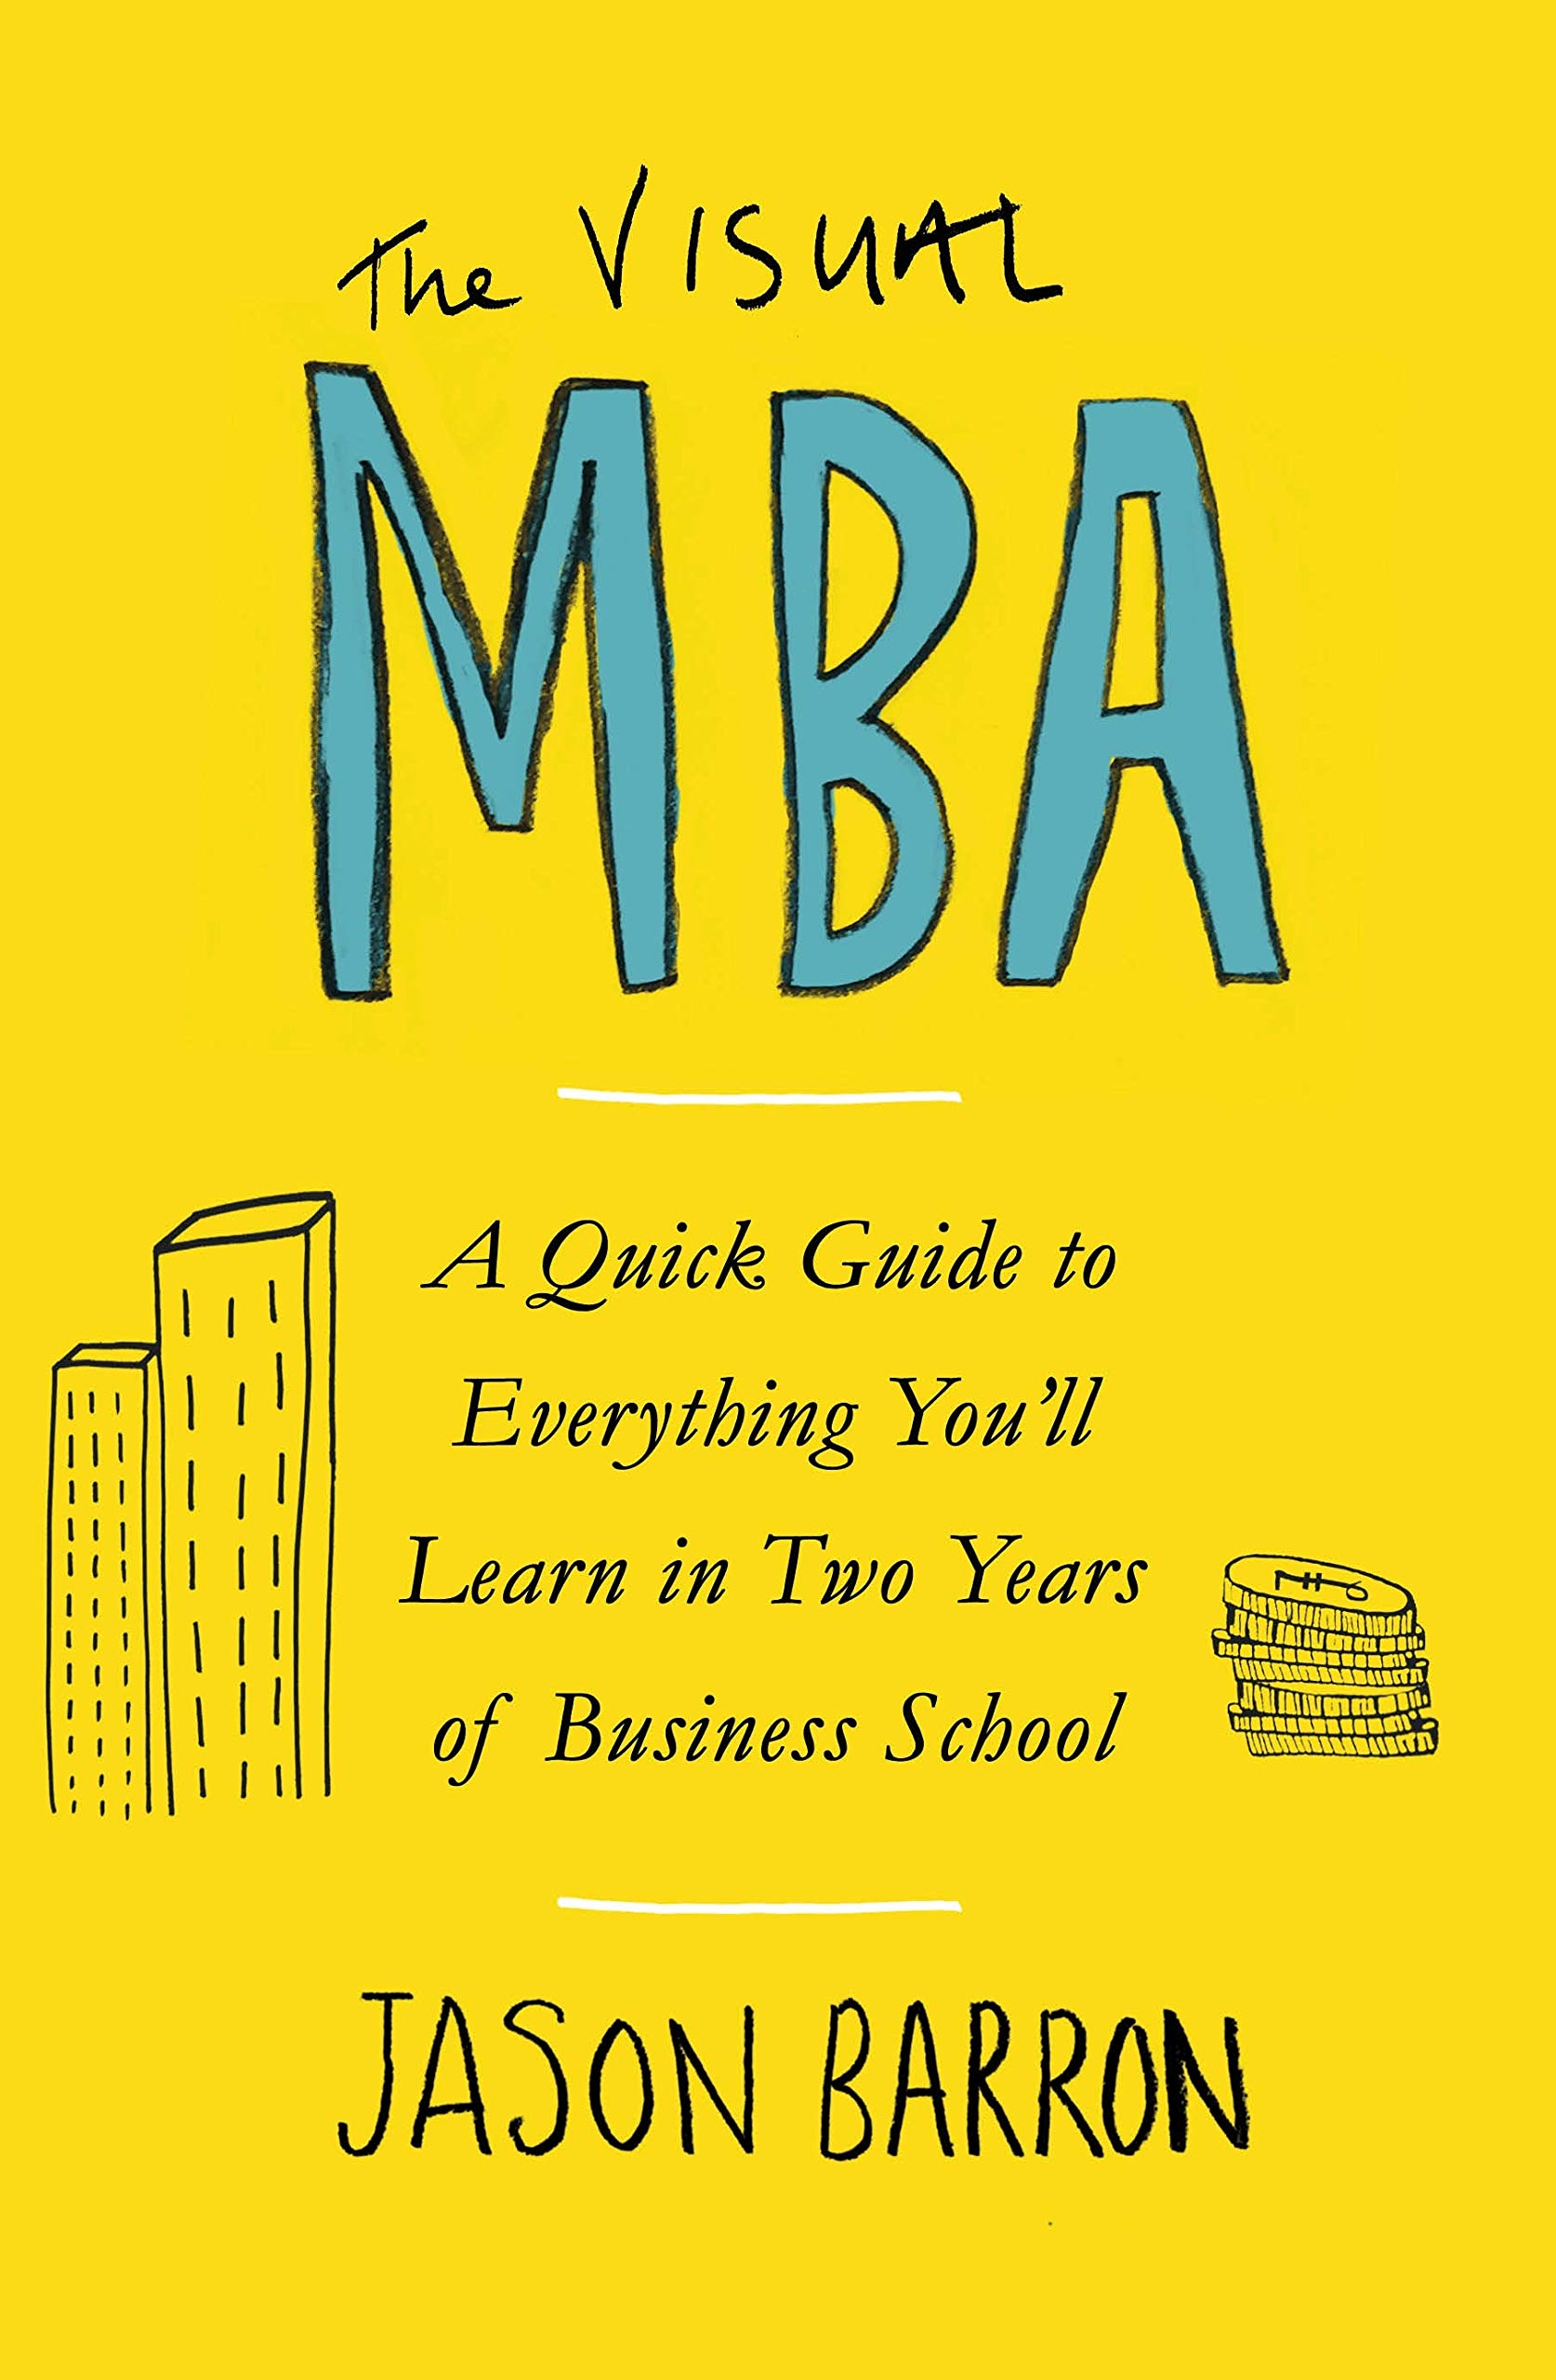 The Visual MBA thumbnail